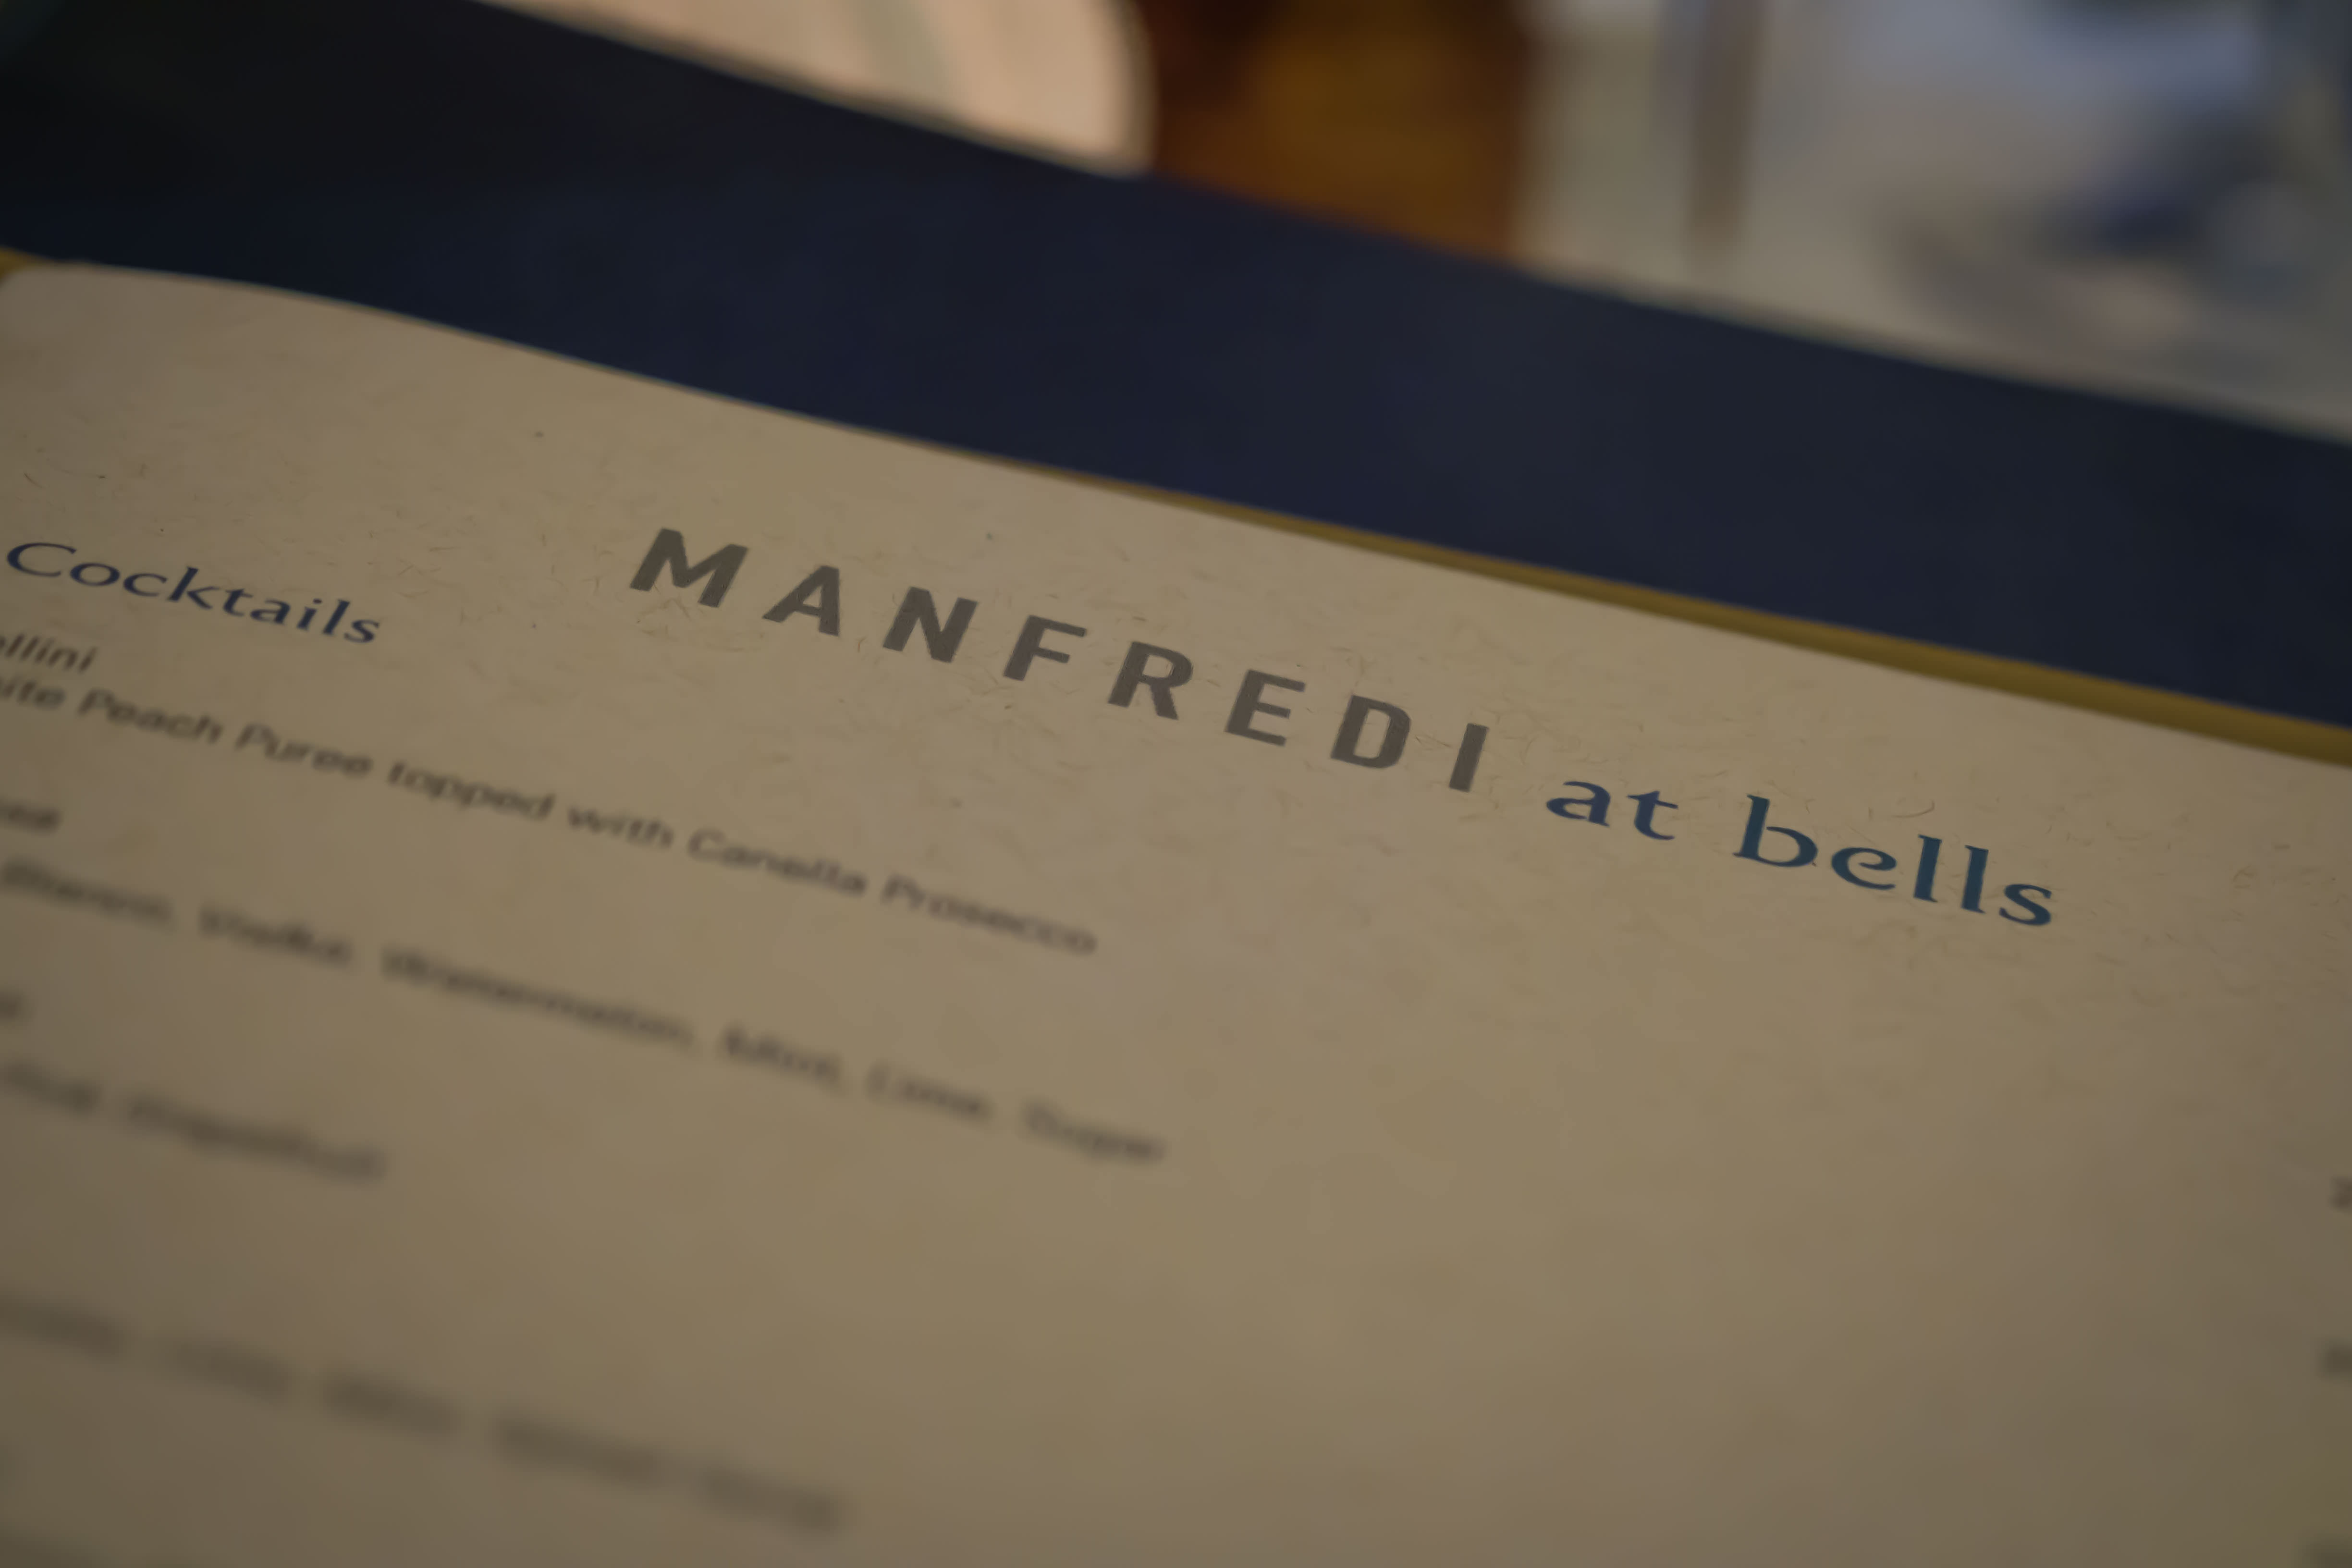 Manfredi at Bells - Menu